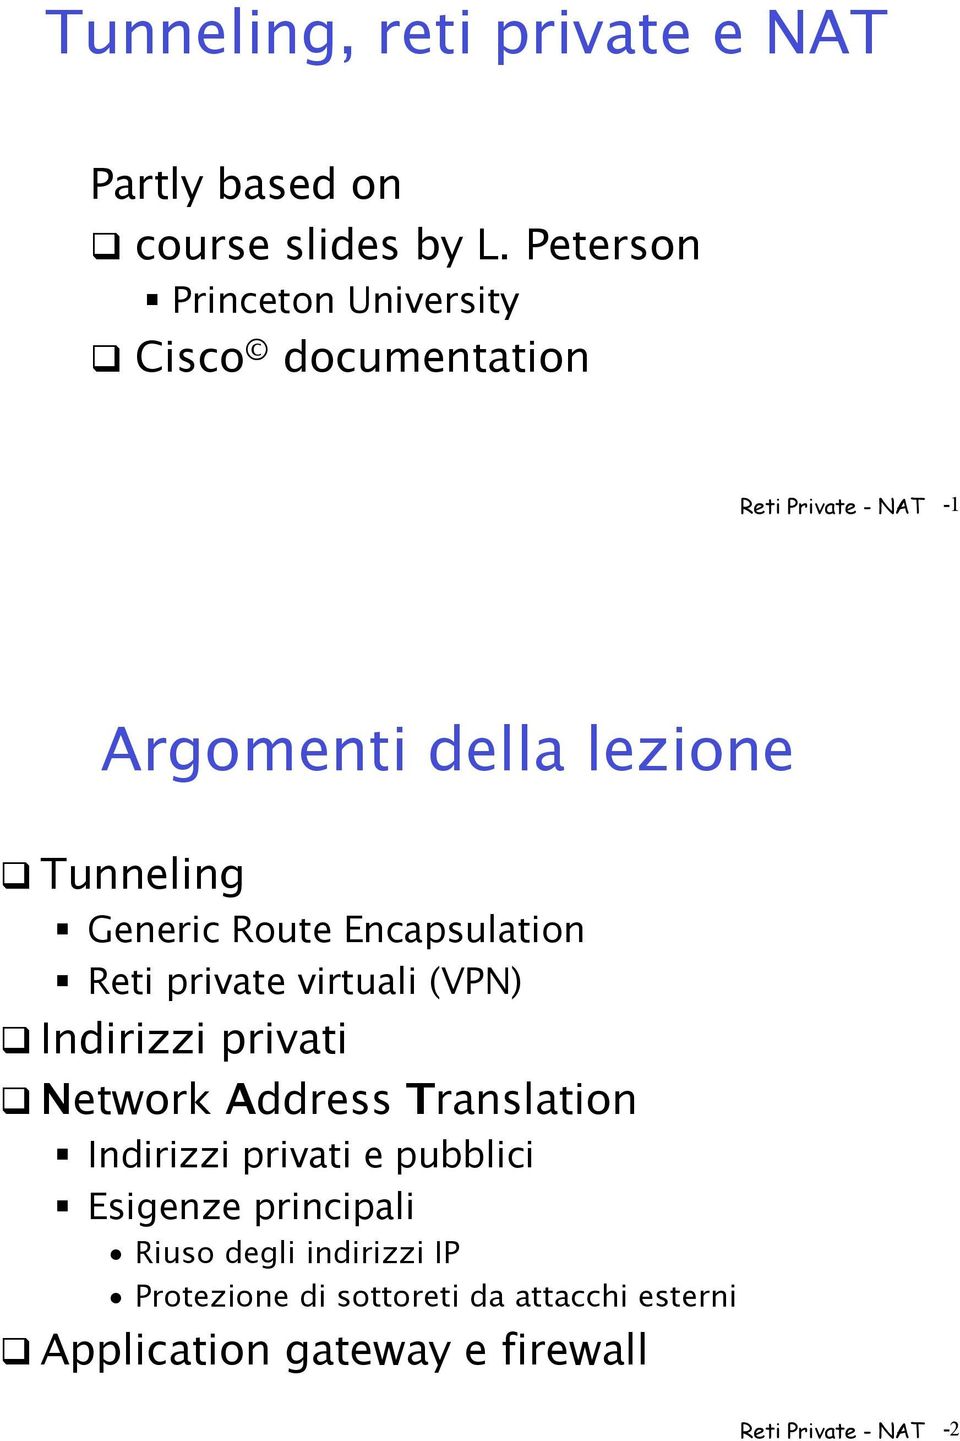 Tunneling " Generic Route Encapsulation " Reti private virtuali (VPN)! Indirizzi privati!